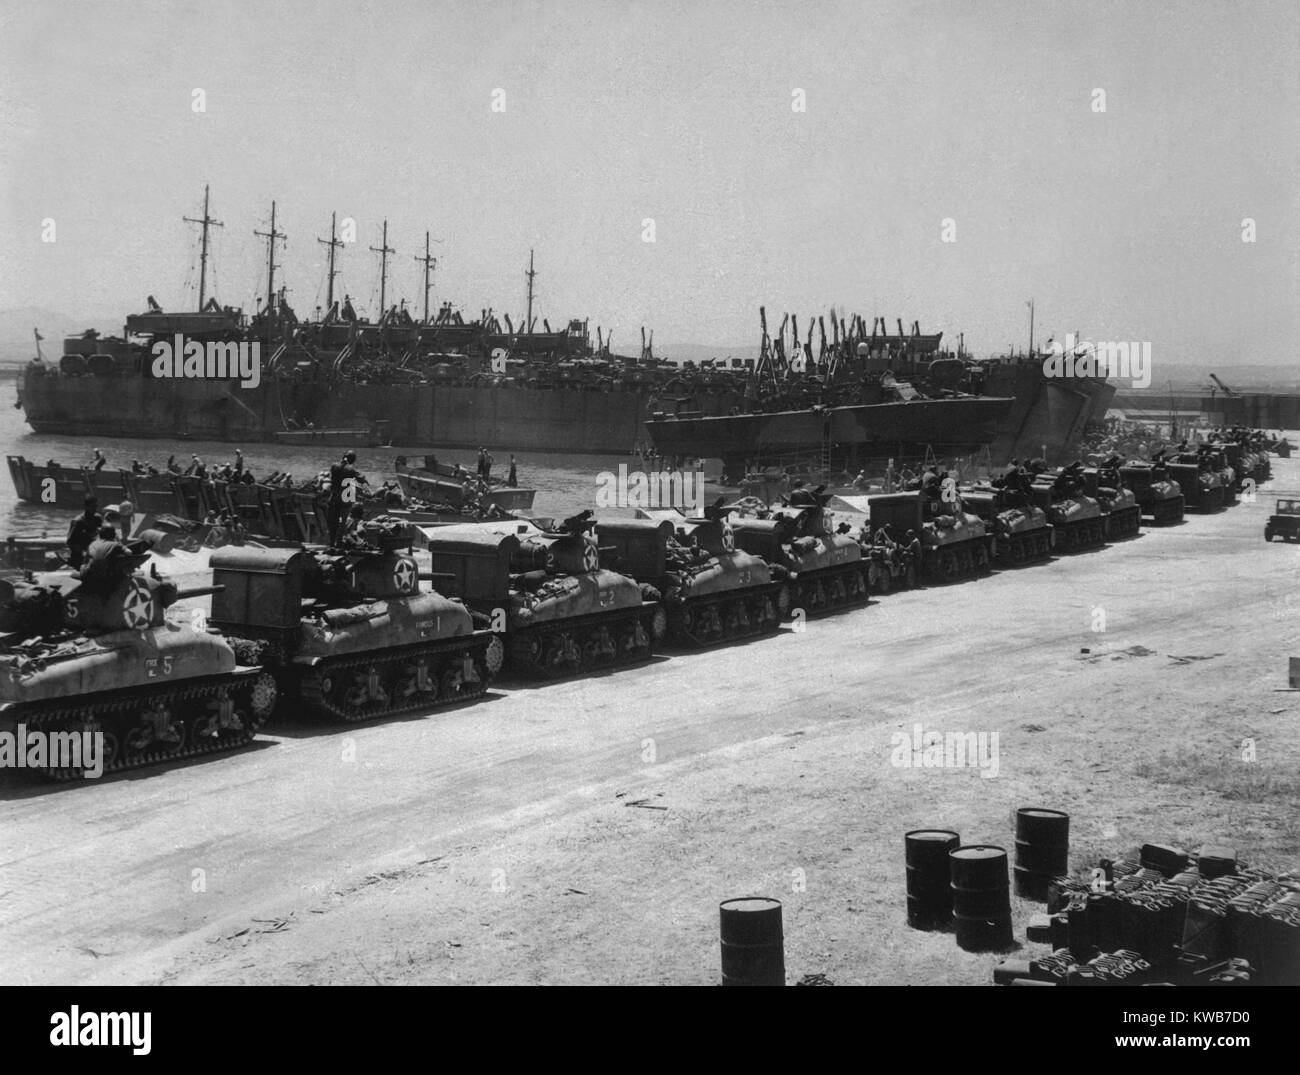 Zwei Tage vor der Invasion der Alliierten auf Sizilien, Tanks board Landing Craft. Schiffe sind an der Französischen Marinebasis, La Pecherie, Tunesien. Juli 1943, der zweite Weltkrieg 2. (BSLOC 2014 10 19) Stockfoto